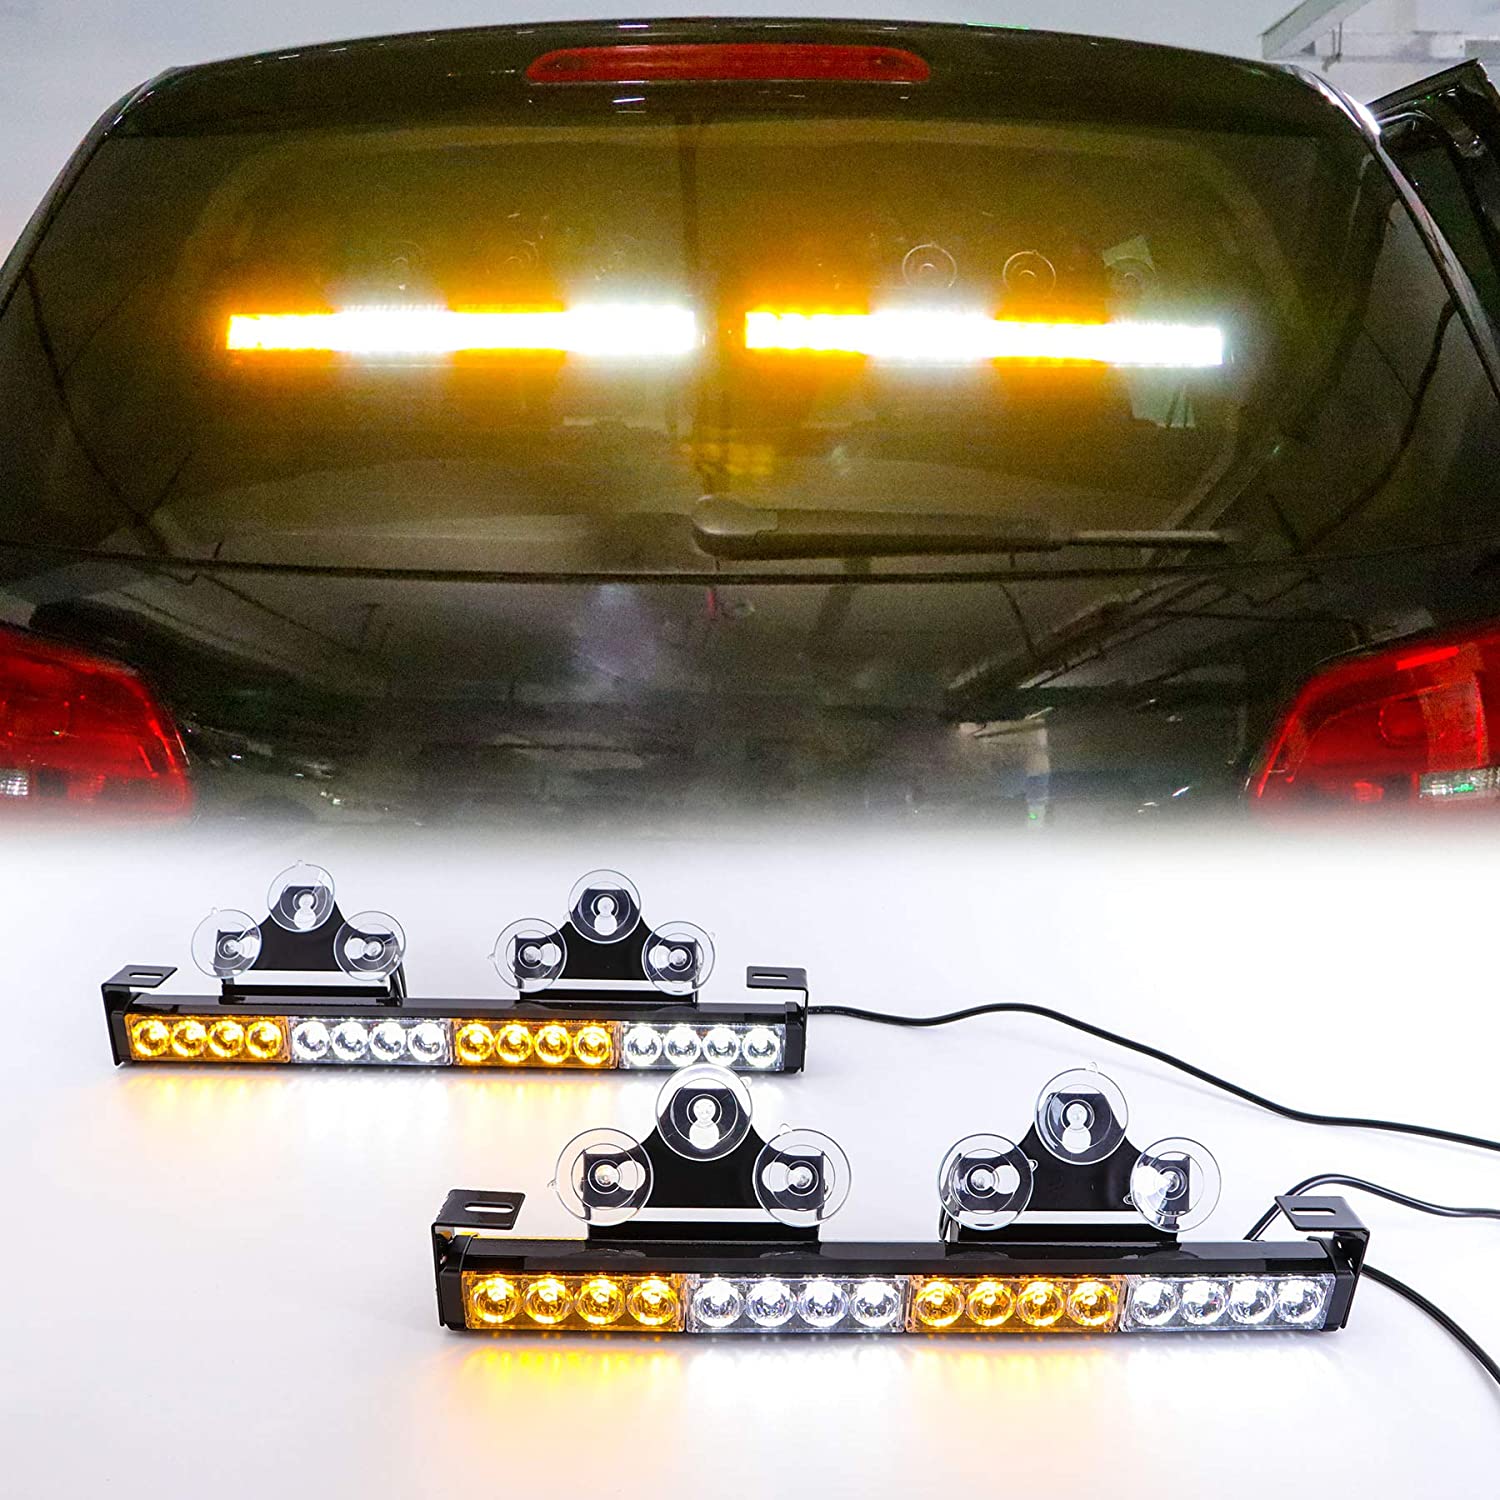 Lampu LED berkelip untuk kereta berwarna kuning putih berbilang warna